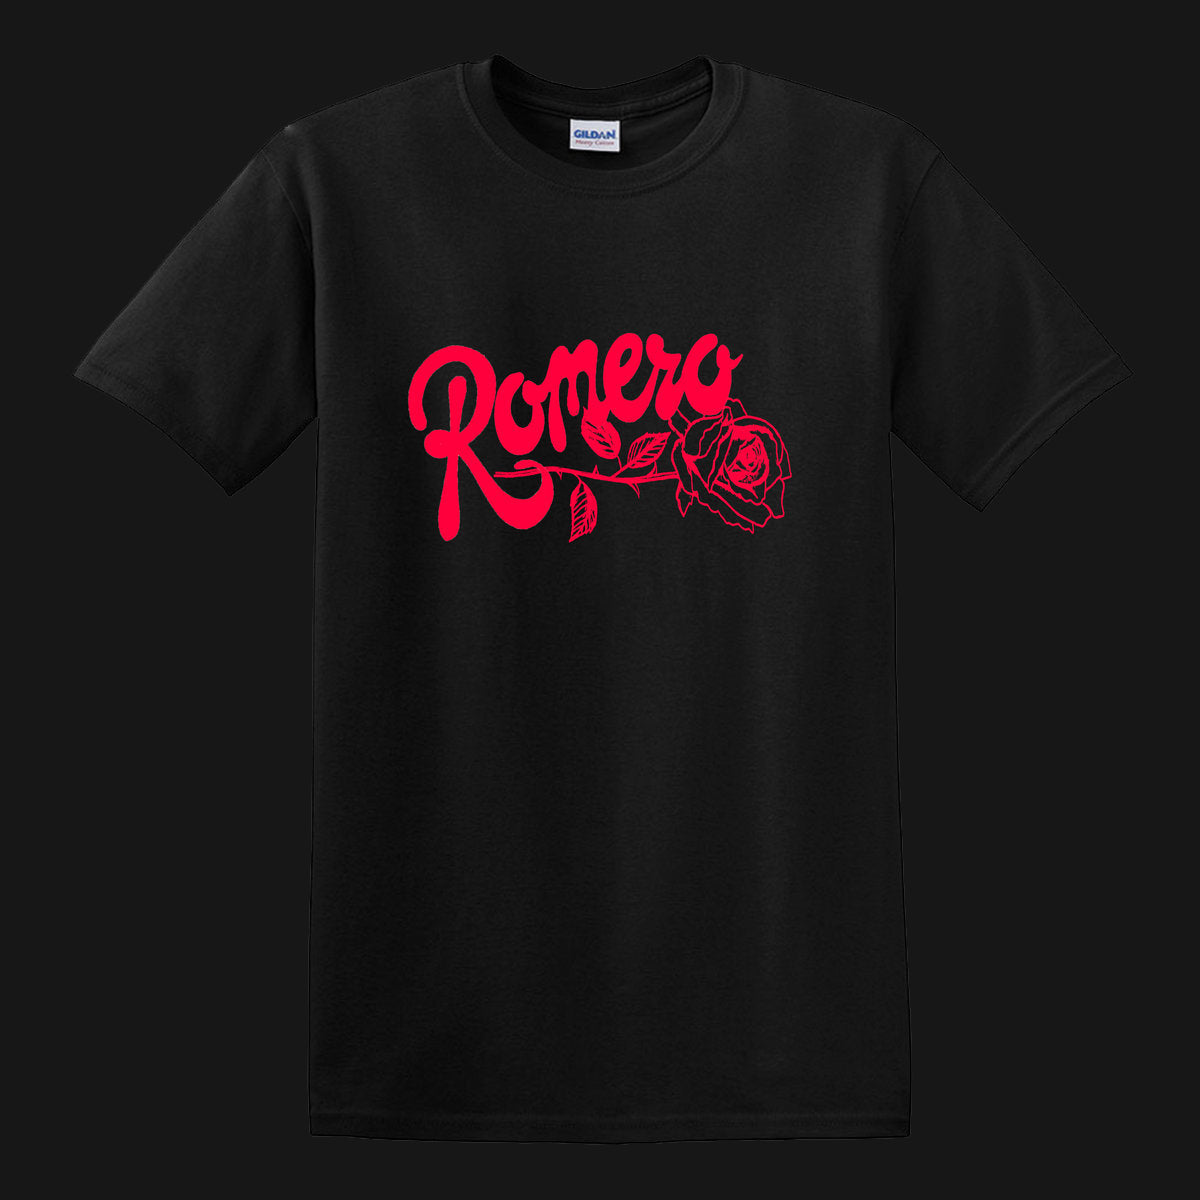 ROMERO - "ROSE" SHIRT